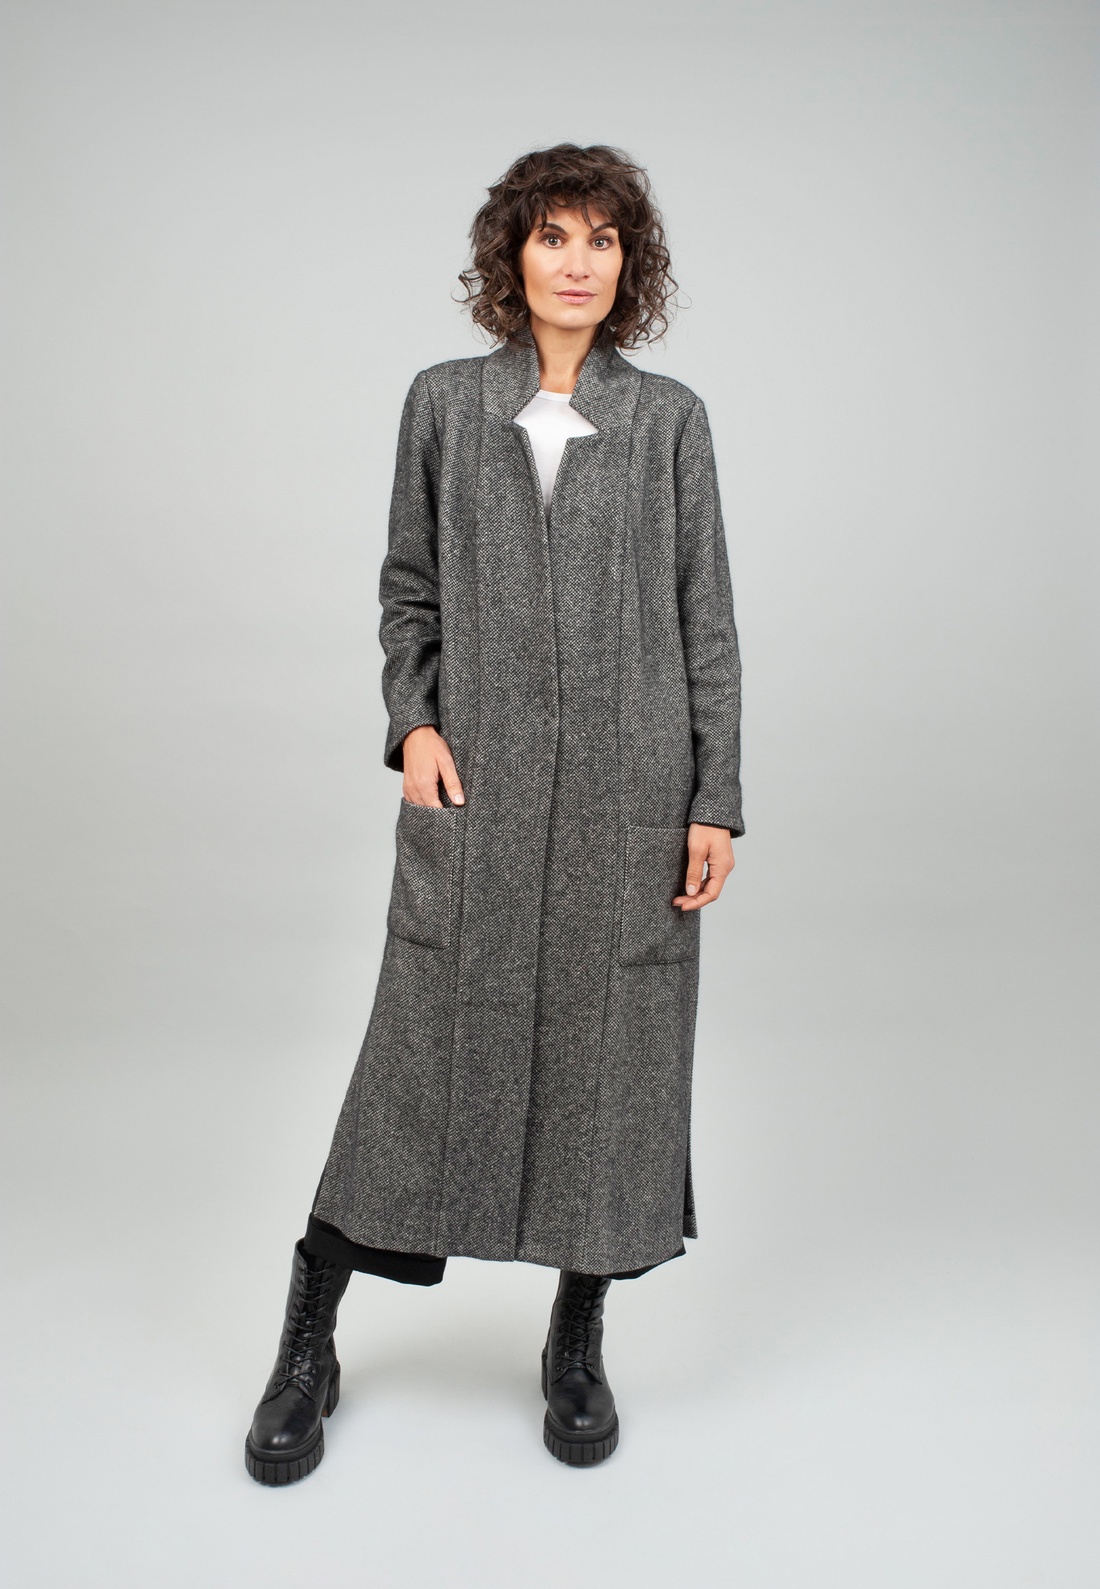 Luxuriöser, grau melierter, weicher Mantel aus Angora, Merinowolle und Seide, tailliert geschnitten, hohe Seitenschlitze